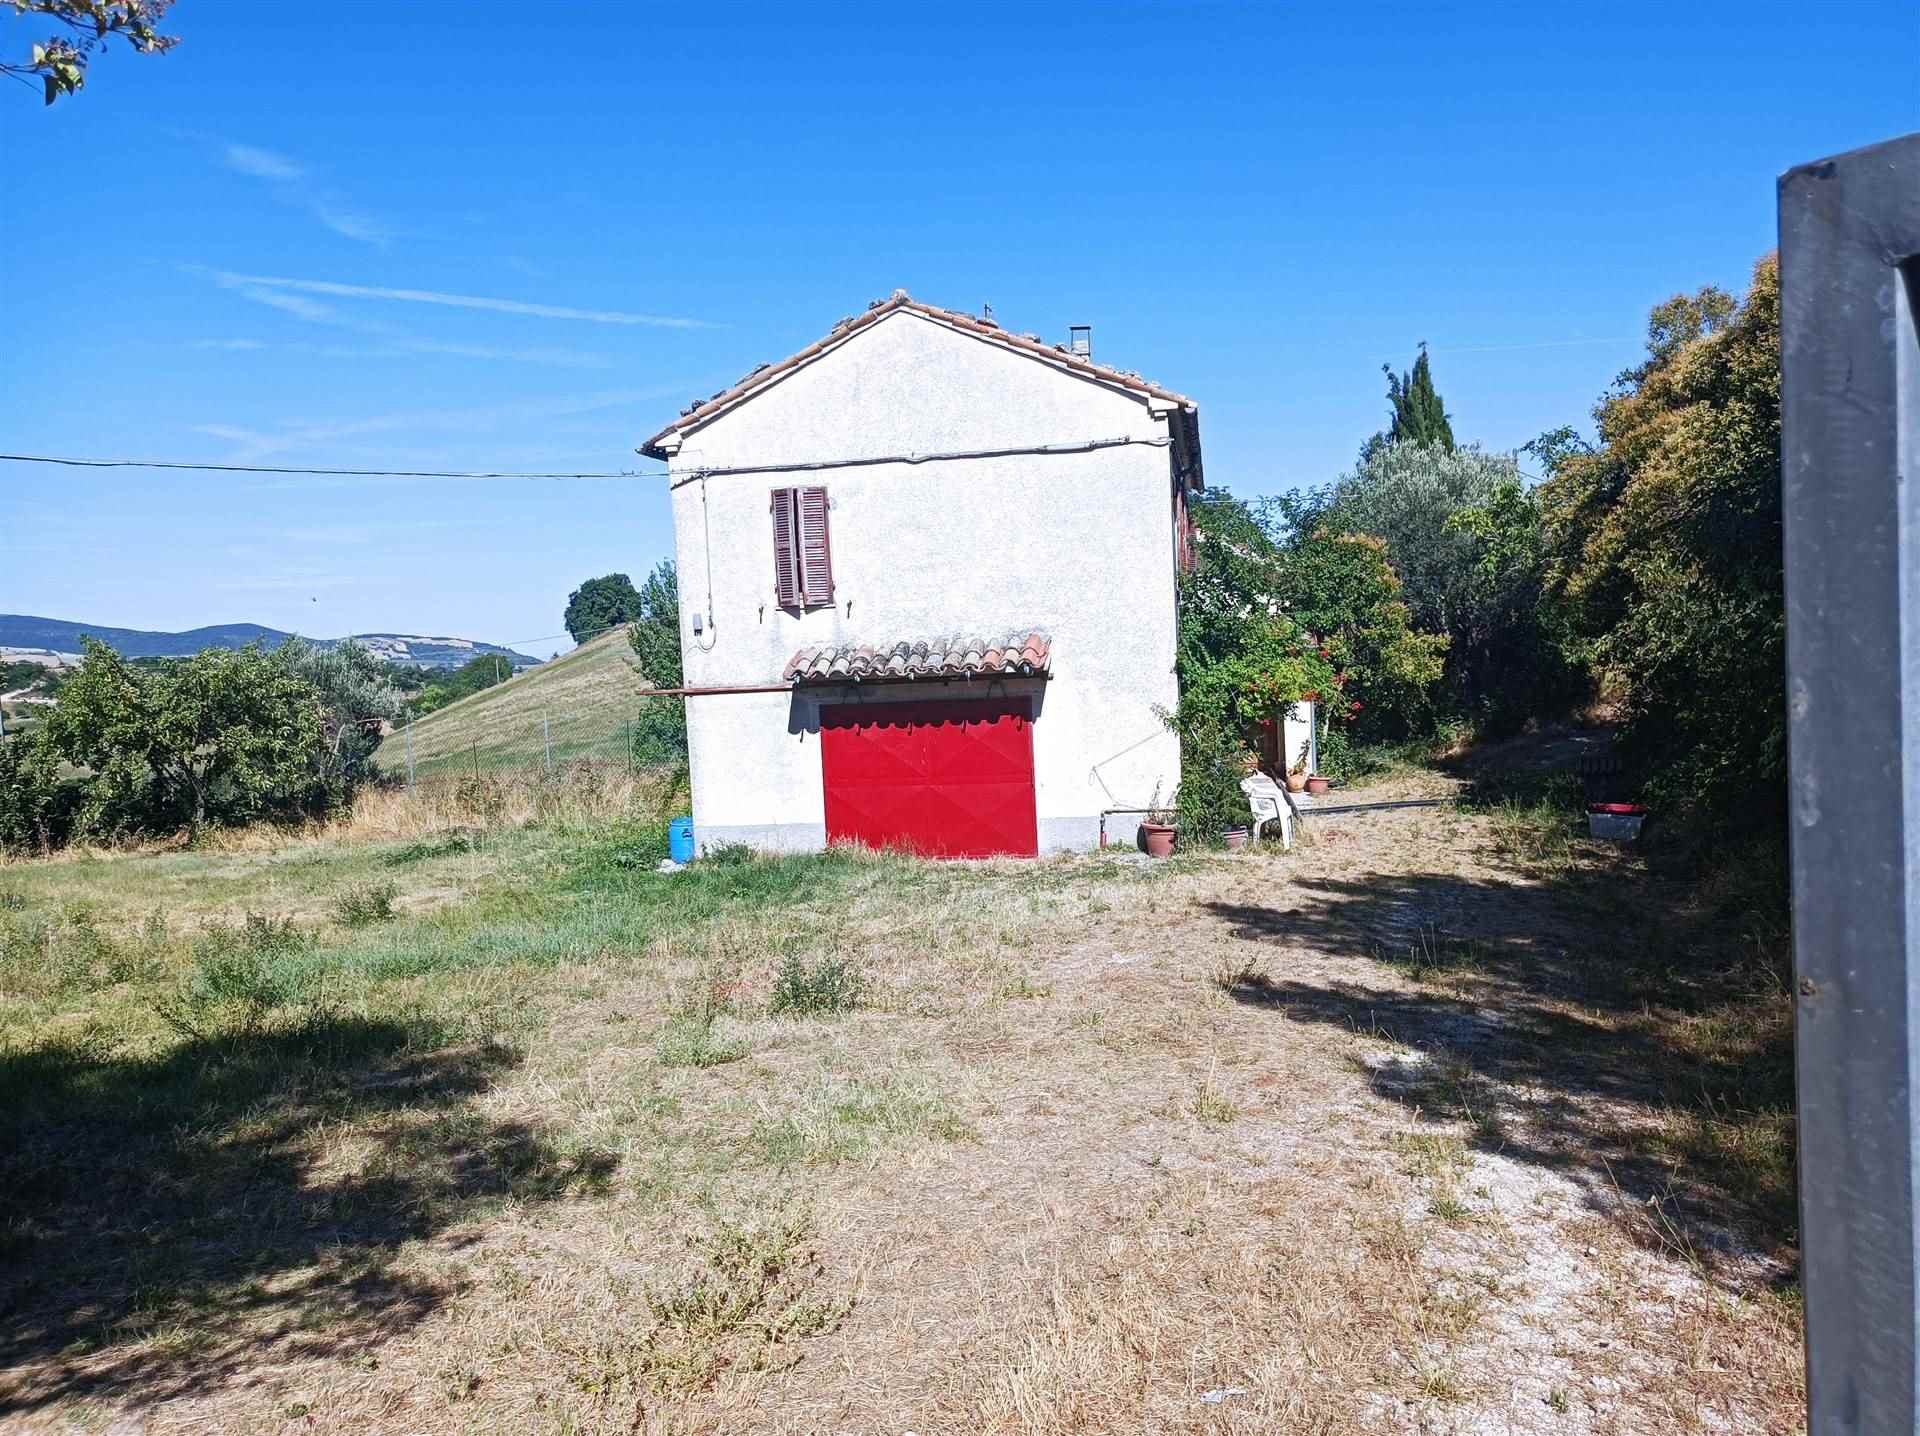 House for sale in San Severino Marche, MarcheF_708034 ima38451-F_708034.